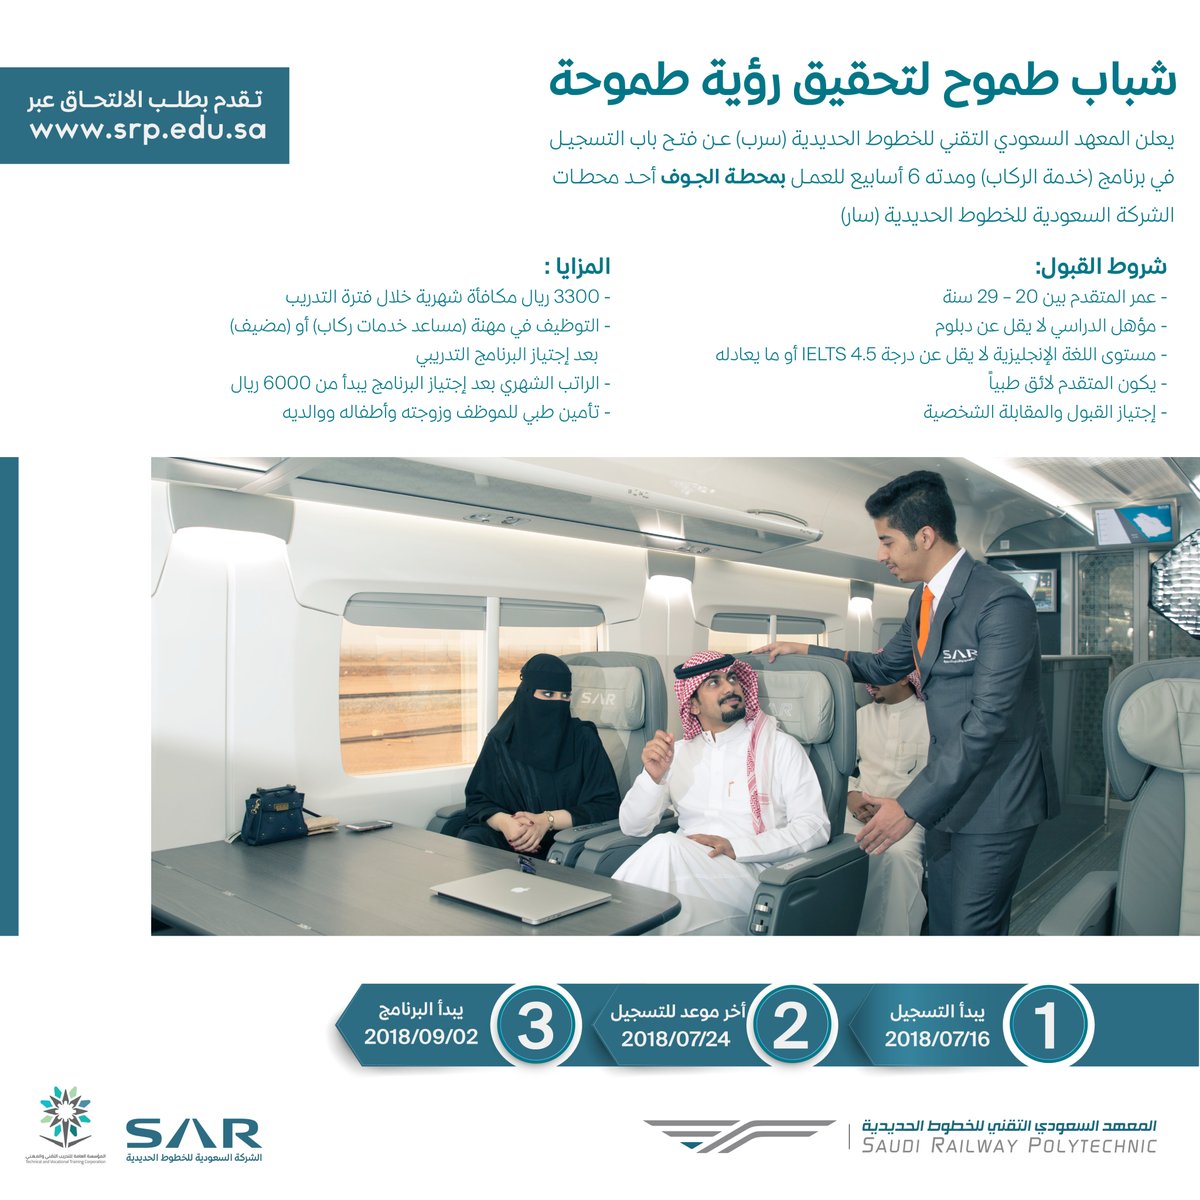 المعهد السعودي سرب برنامج خدمات الركاب تدريب منتهي بالتوظيف